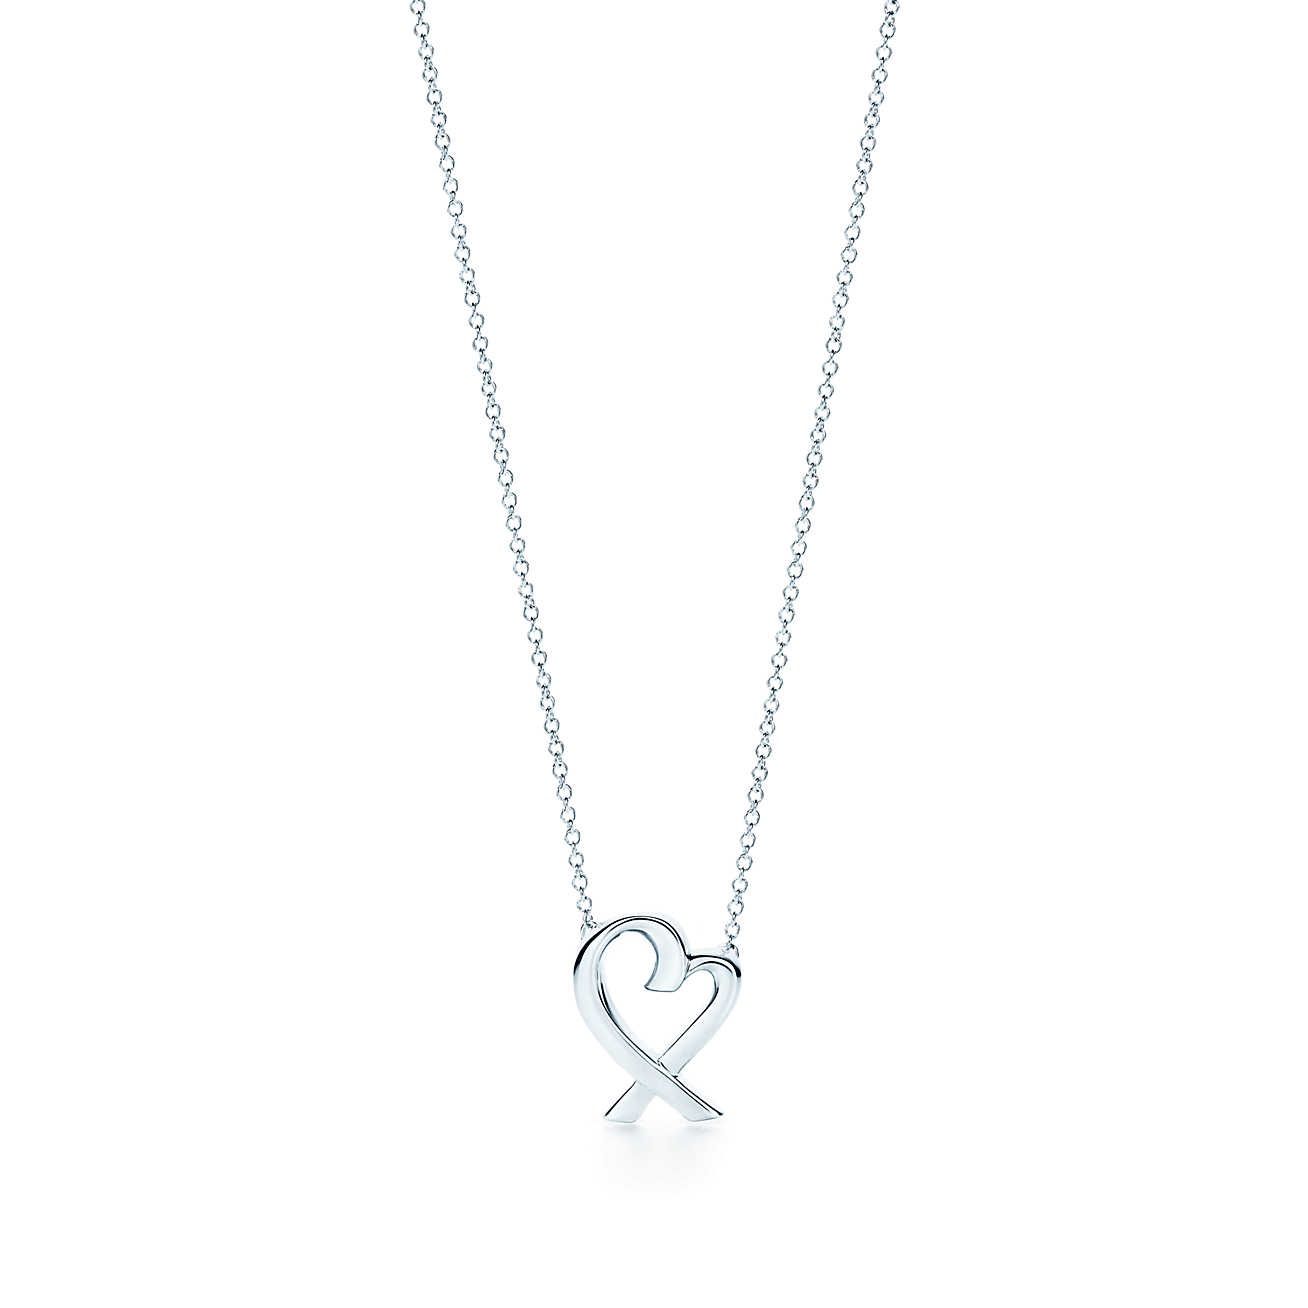 Tiffany’s Paloma Picasso loving heart pendant